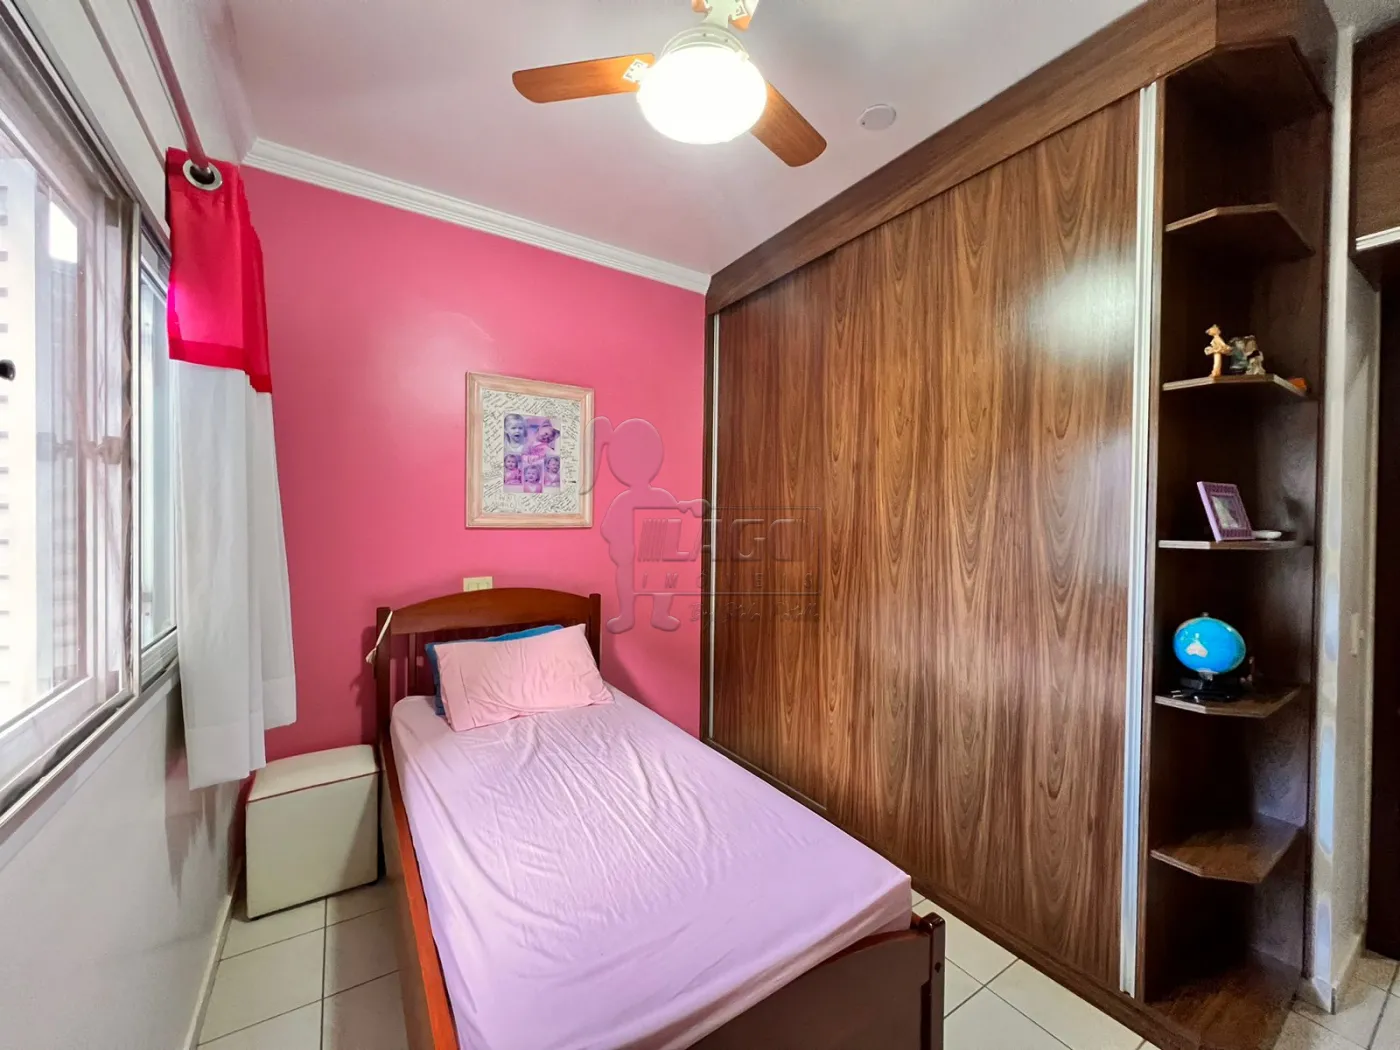 Comprar Casas / Condomínio em Ribeirão Preto R$ 950.000,00 - Foto 13